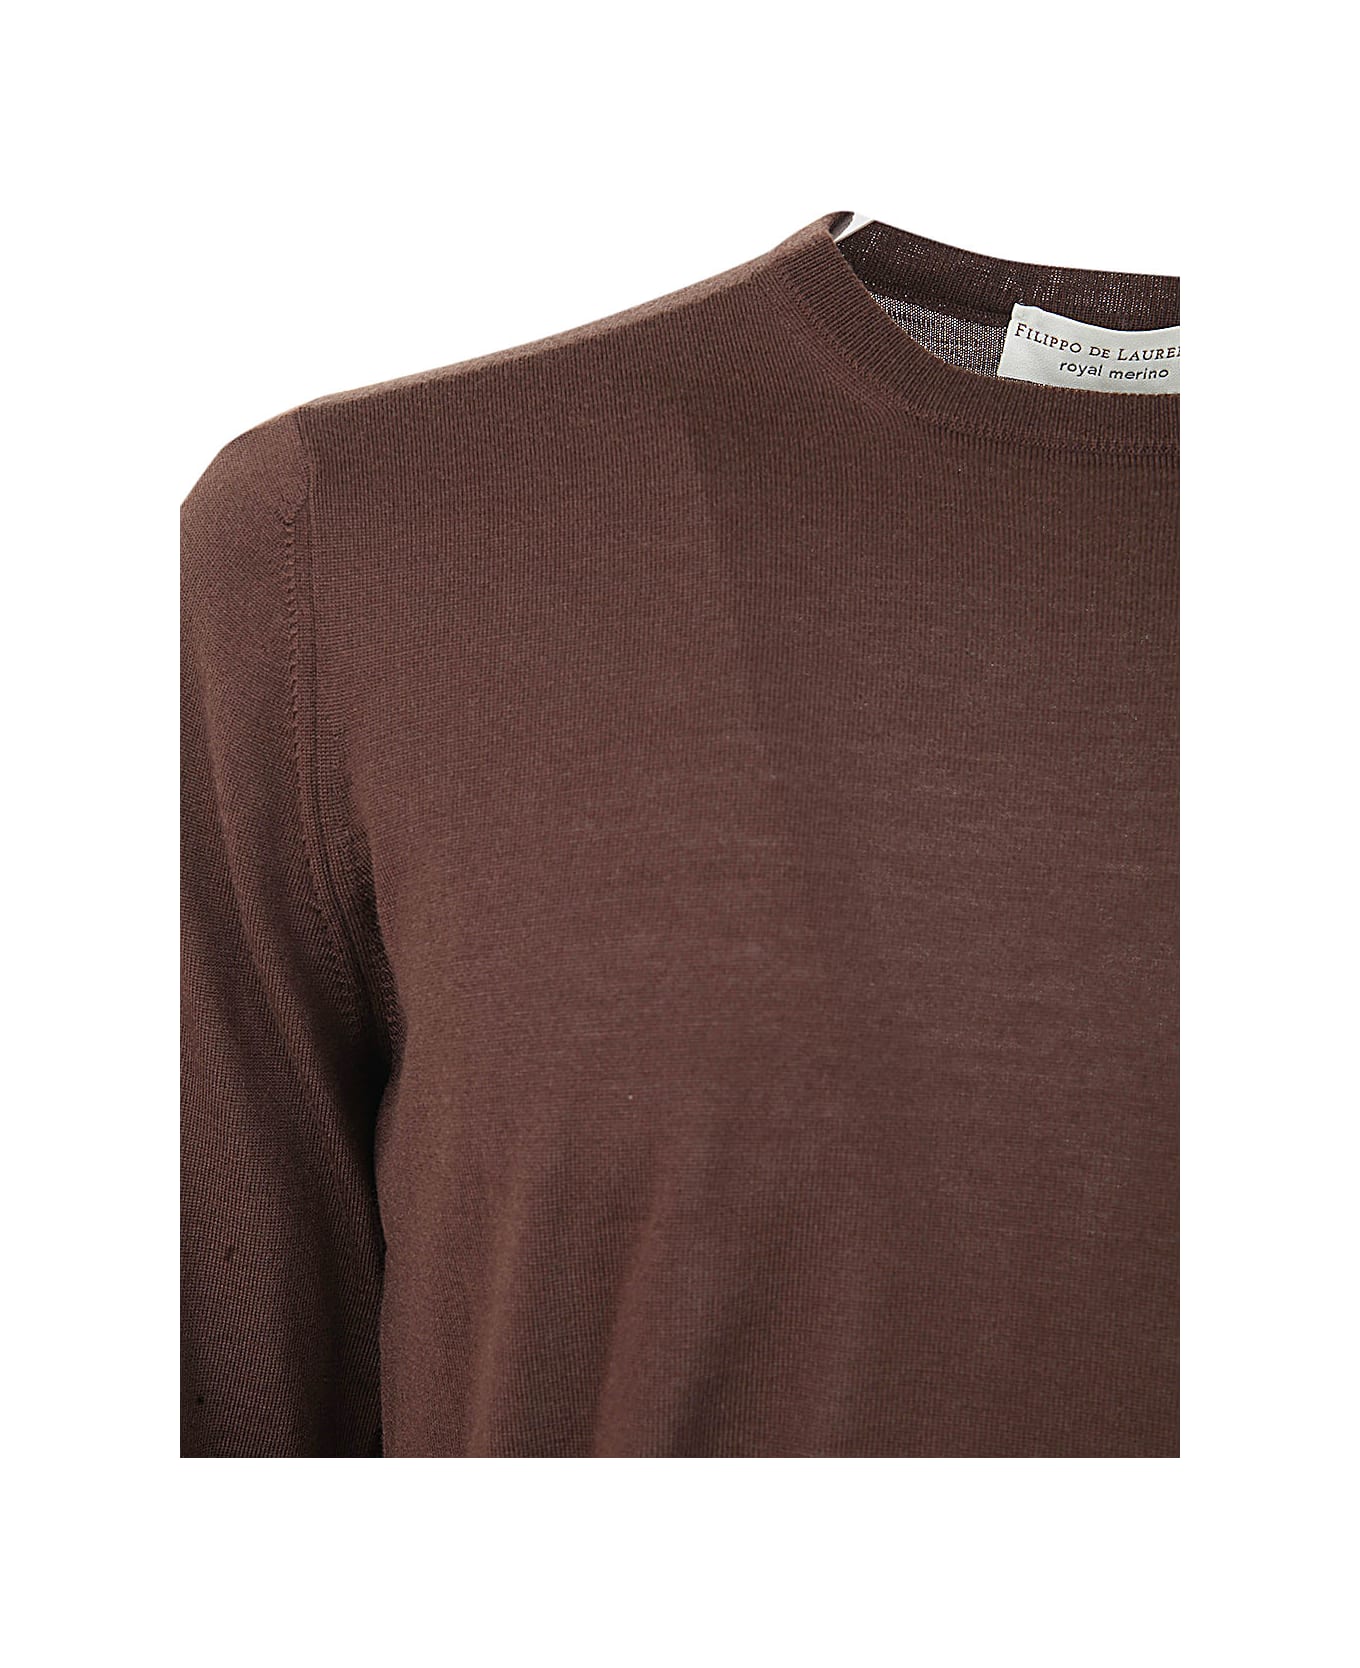 Filippo De Laurentiis Royal Merino Long Sleeves Crew Neck Sweater - Brown ニットウェア